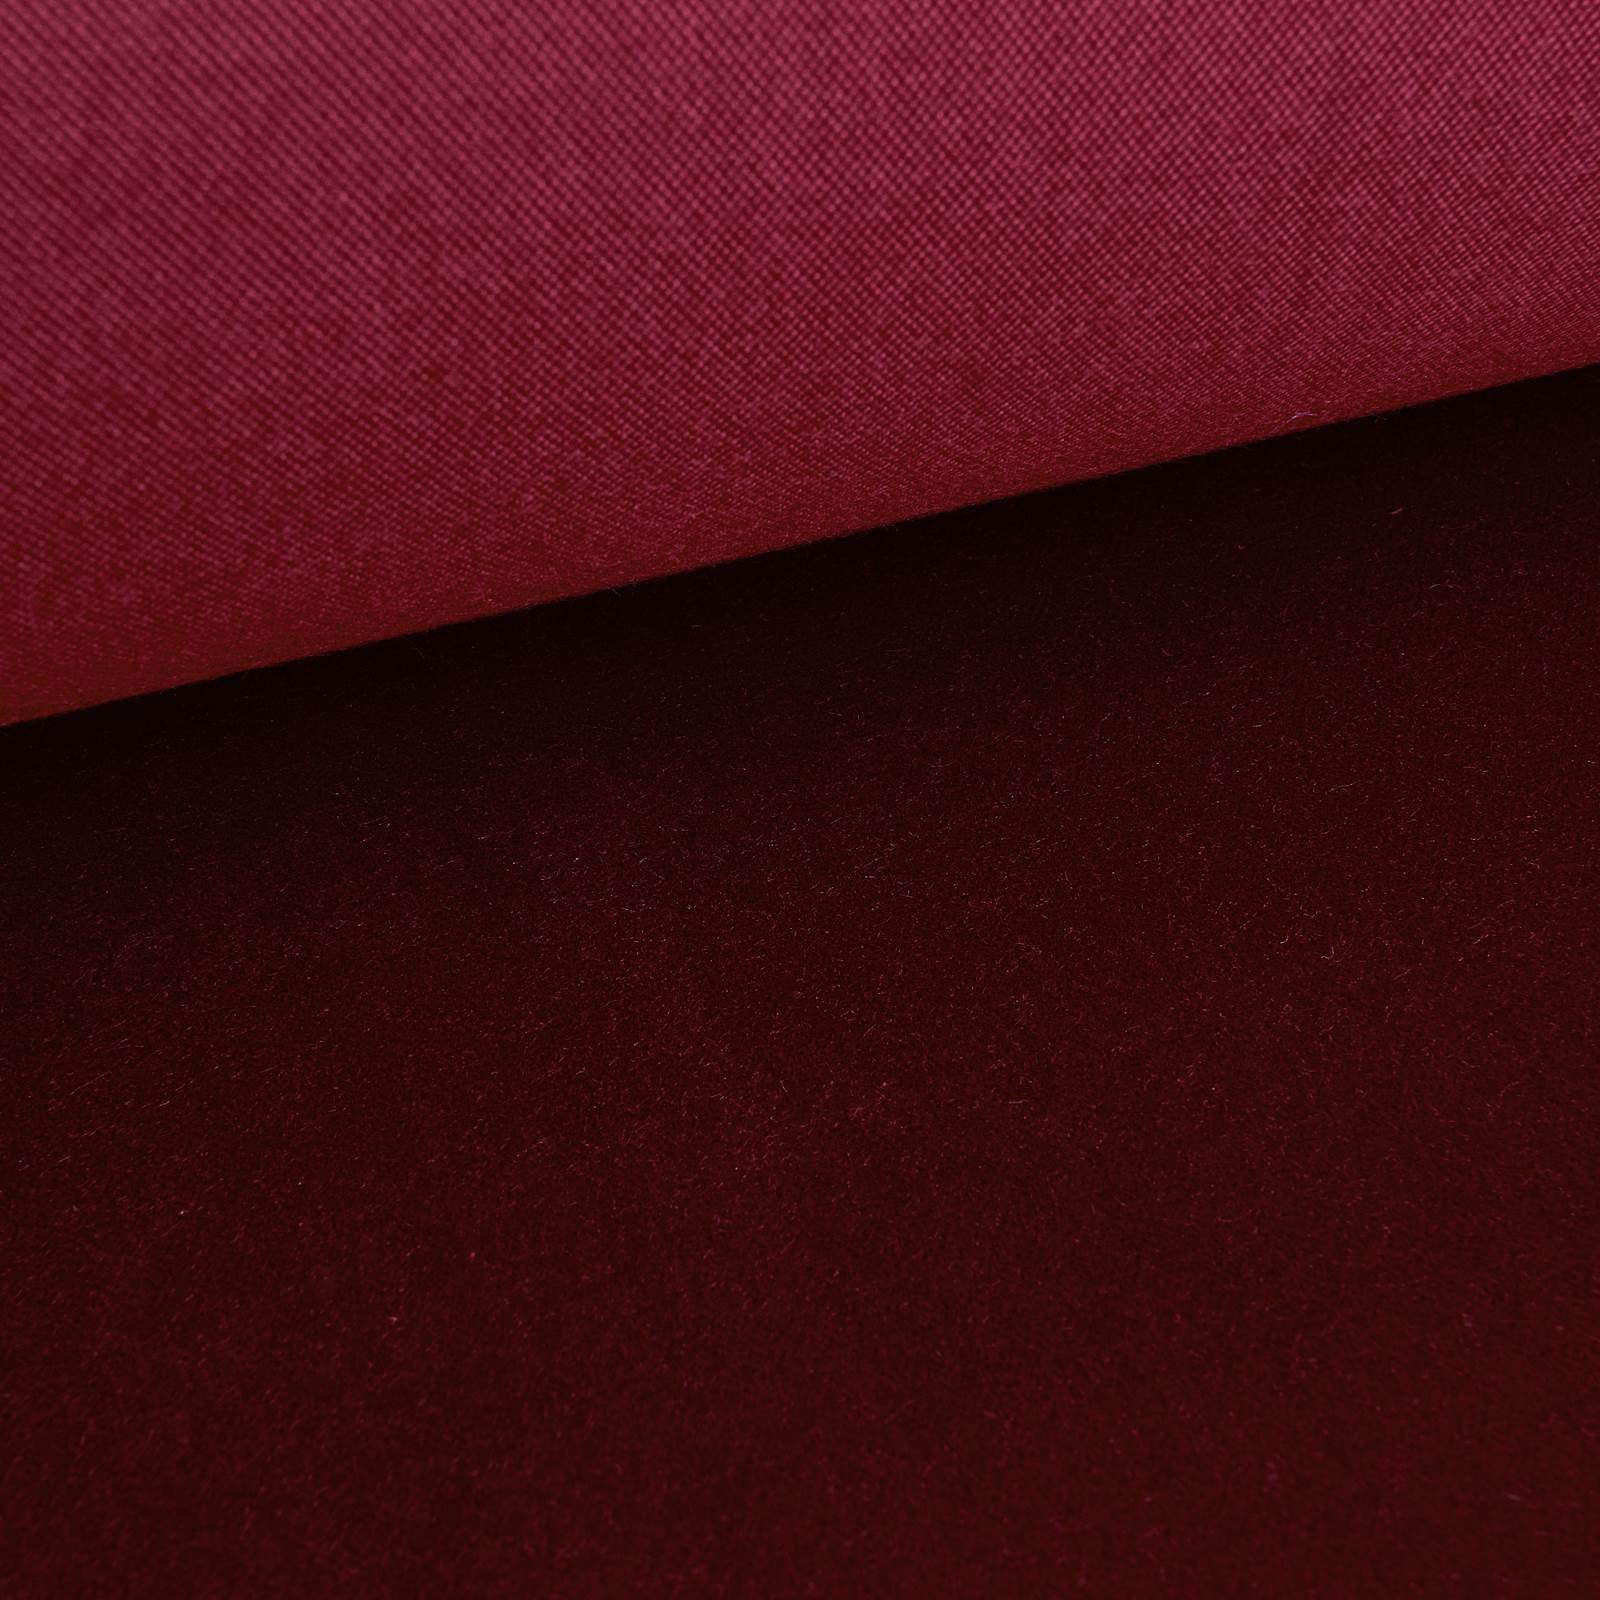 Franz - Cotton Velvet / Stage velvet - Flame retardant (burgundy)